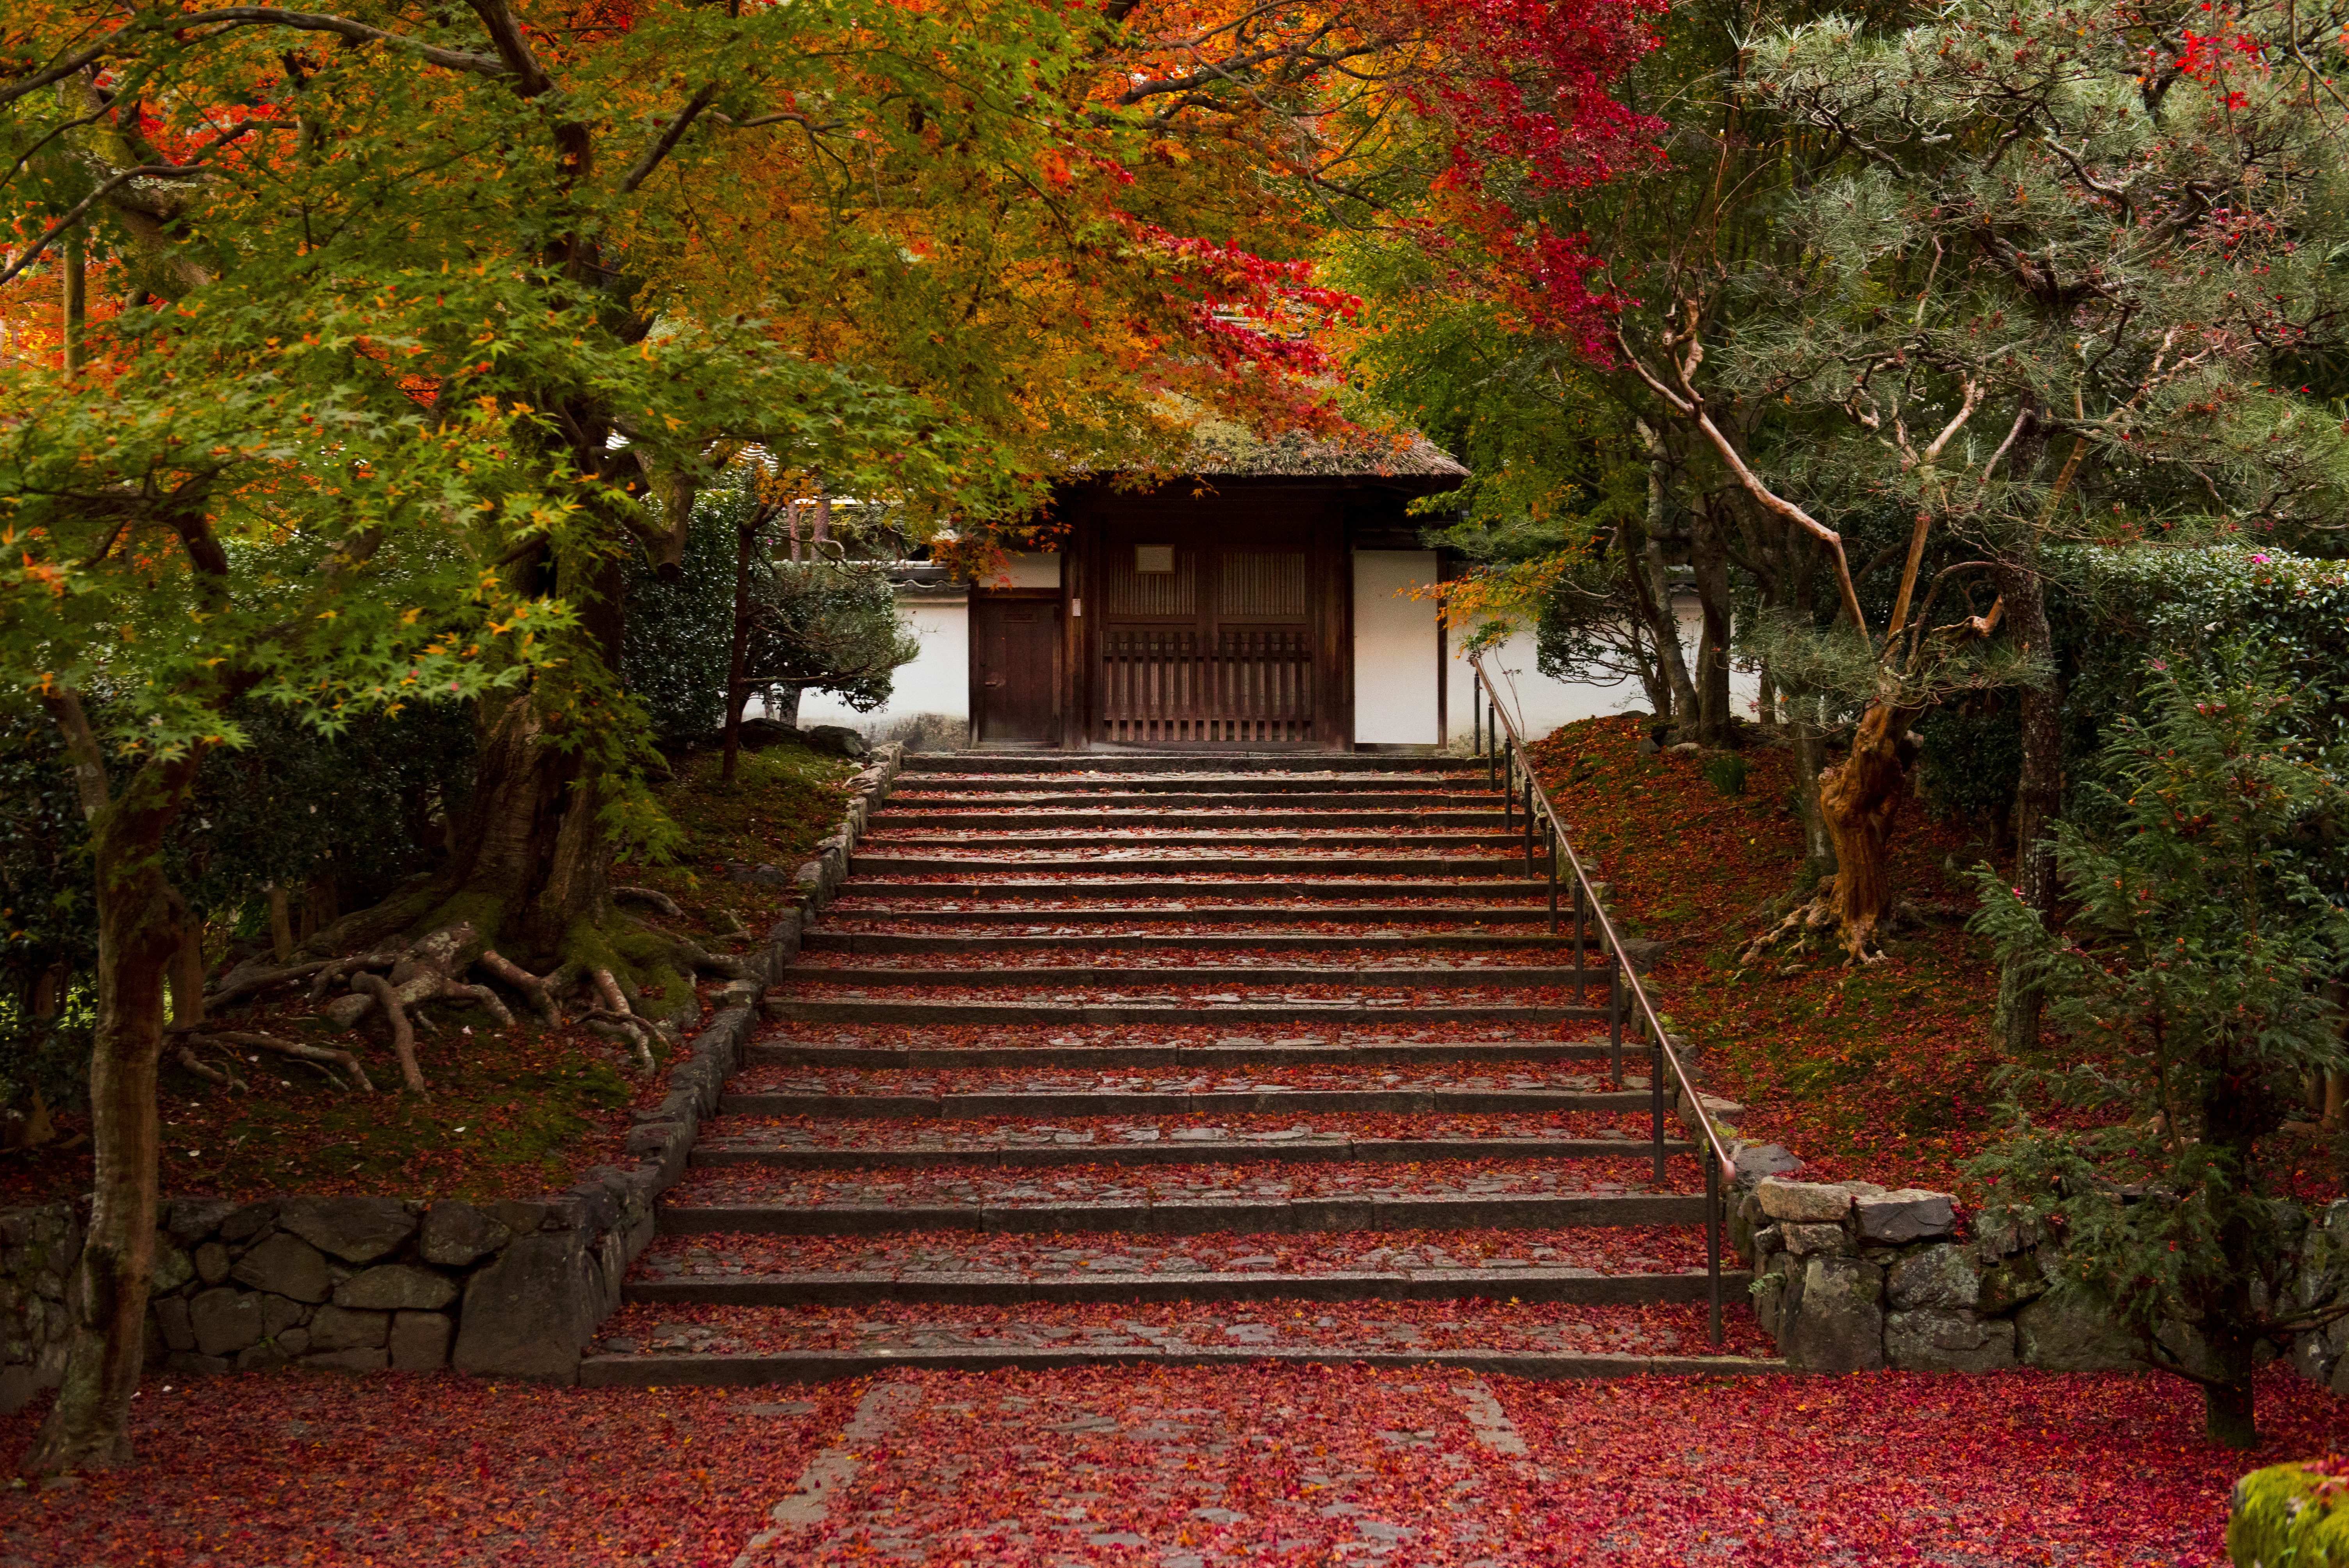 Anraku-ji 安楽寺